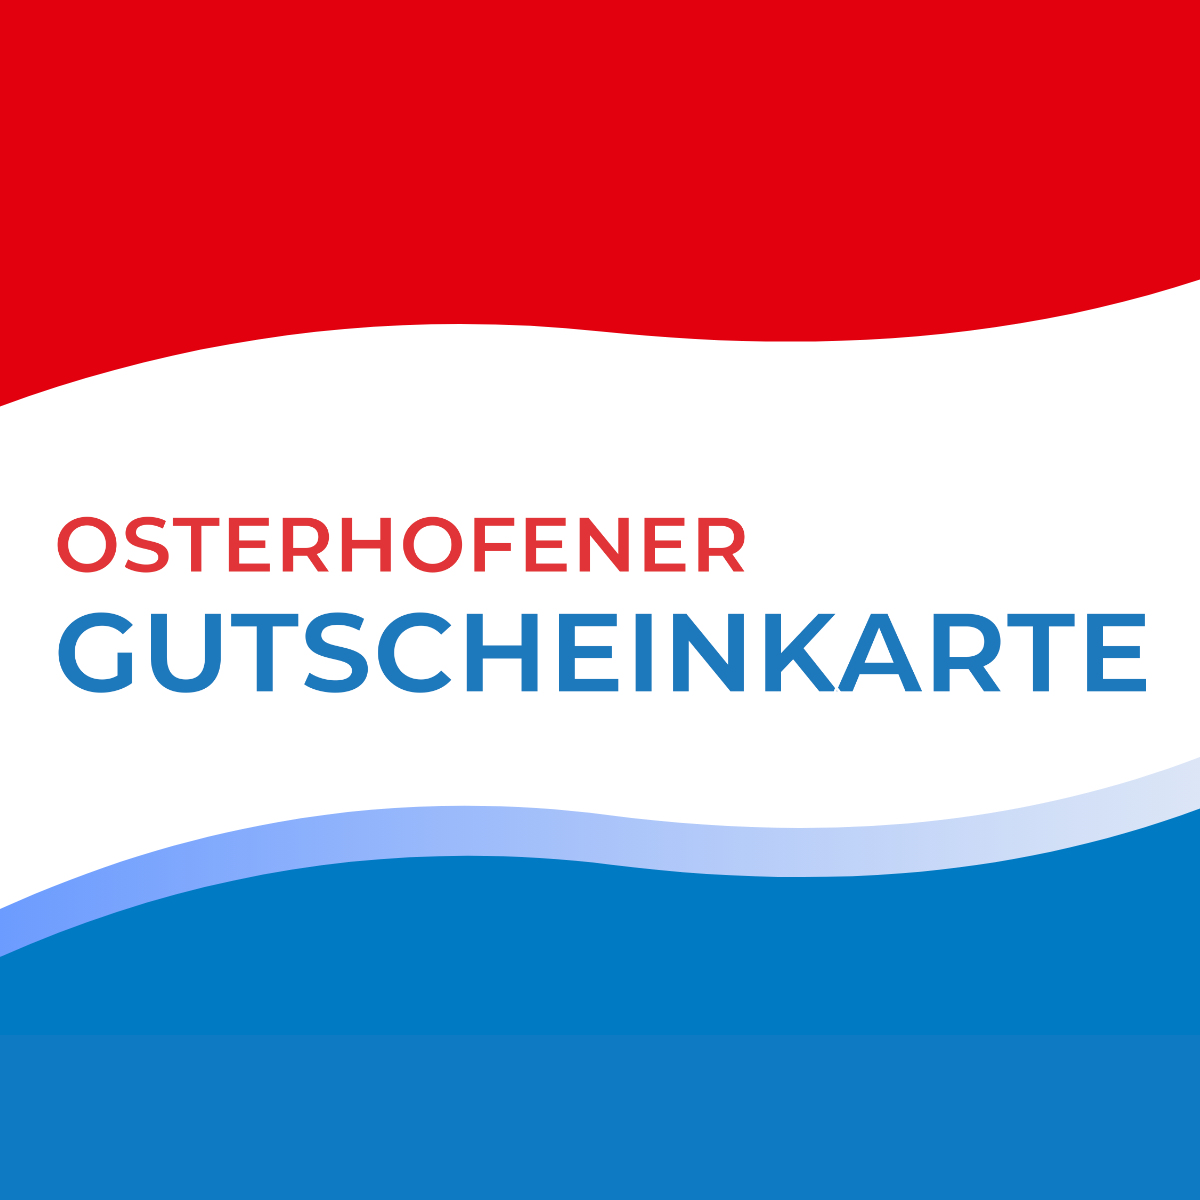 (c) Osterhofener-gutscheinkarte.de